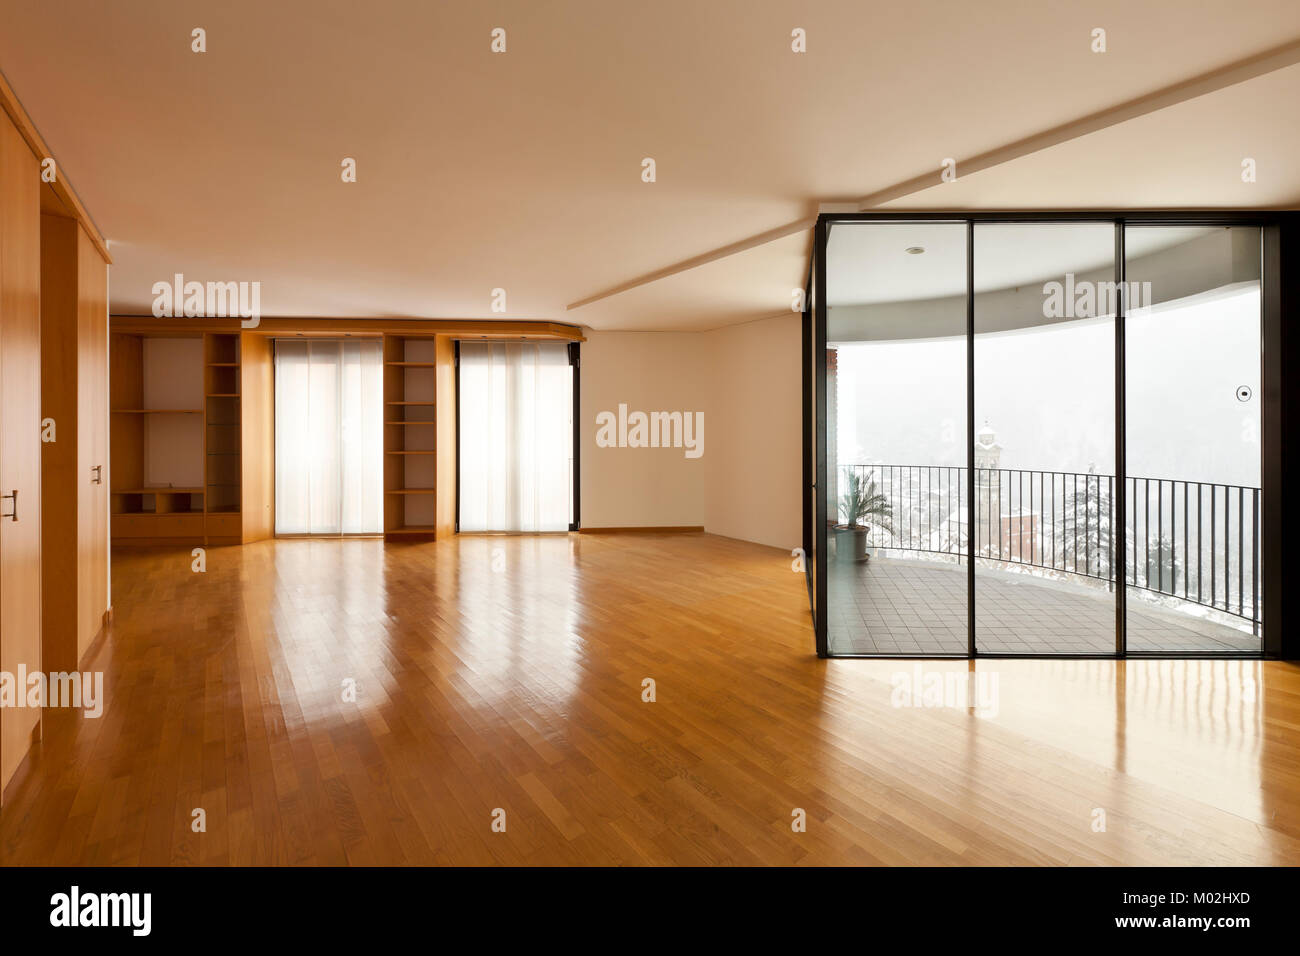 Bellissimo appartamento, interno, stanza vuota con windows Foto Stock